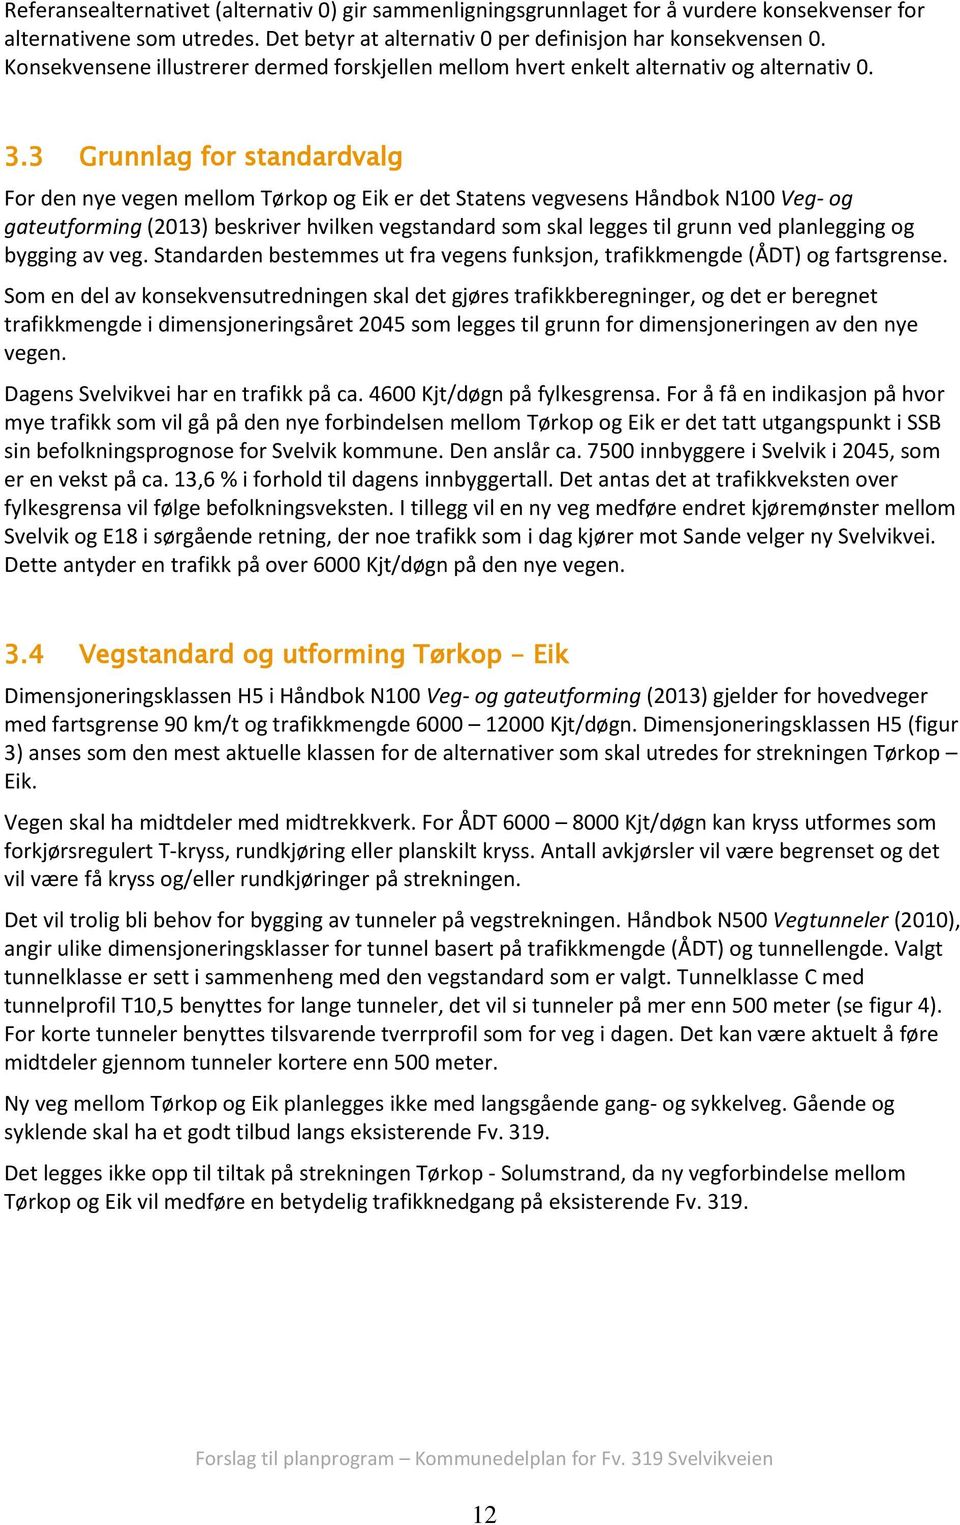 3 Grunnlag for standardvalg For den nye vegen mellom Tørkop og Eik er det Statens vegvesens Håndbok N100 Veg- og gateutforming (2013) beskriver hvilken vegstandard som skal legges til grunn ved